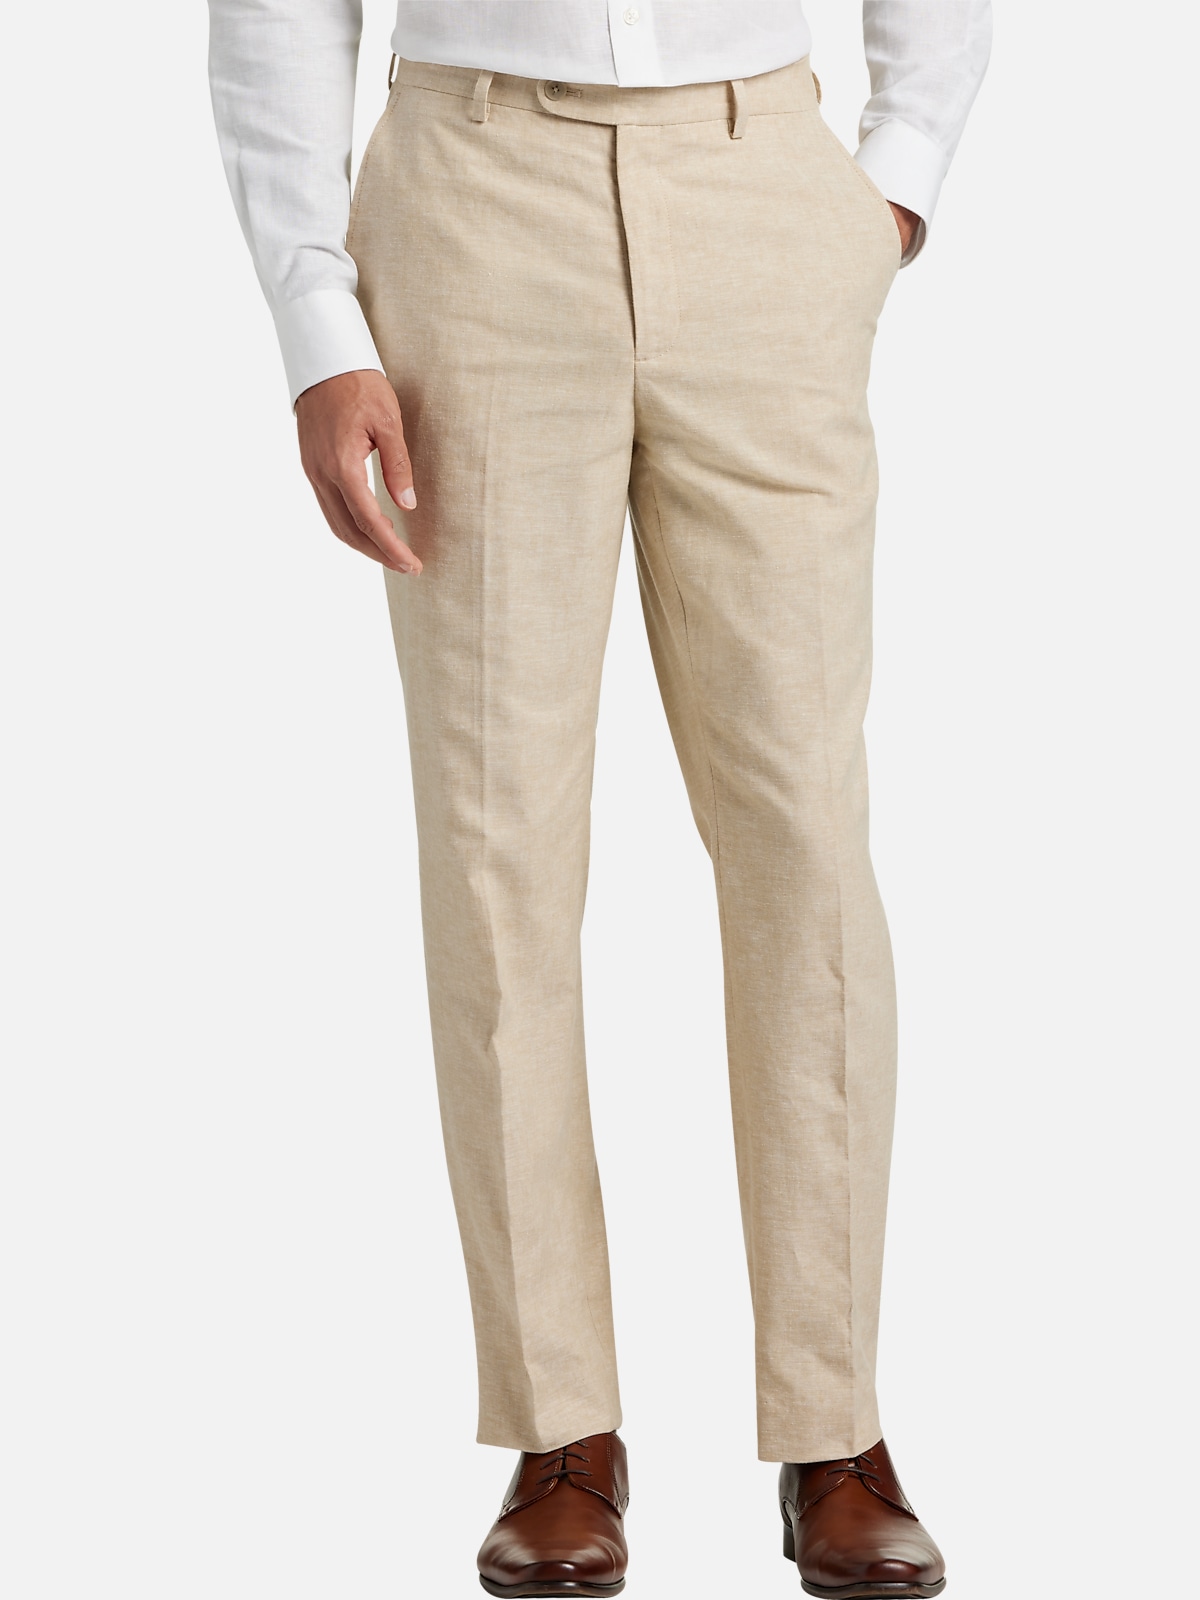 JOE Joseph Abboud Slim Fit Linen Blend Suit Separates Pants | All ...